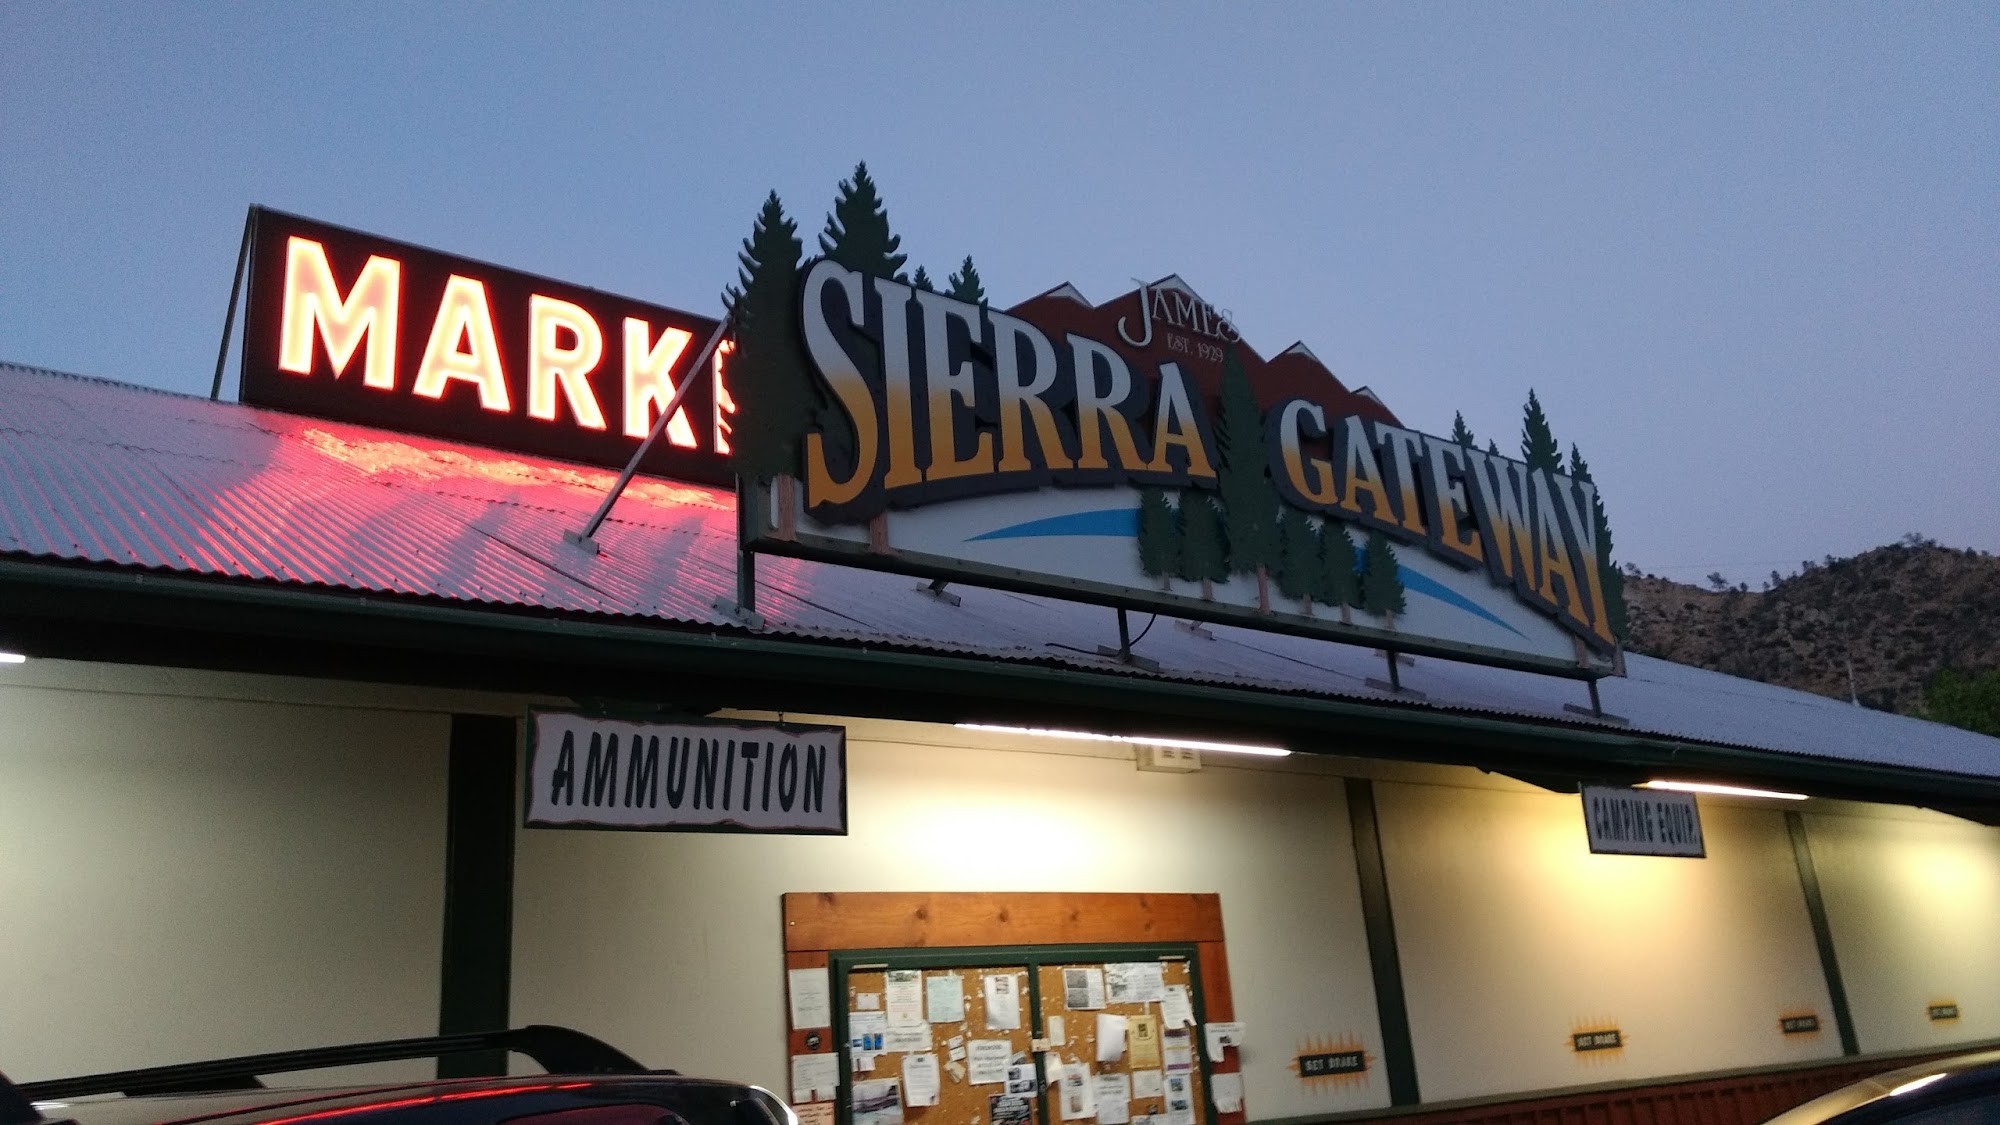 Sierra Gateway Market